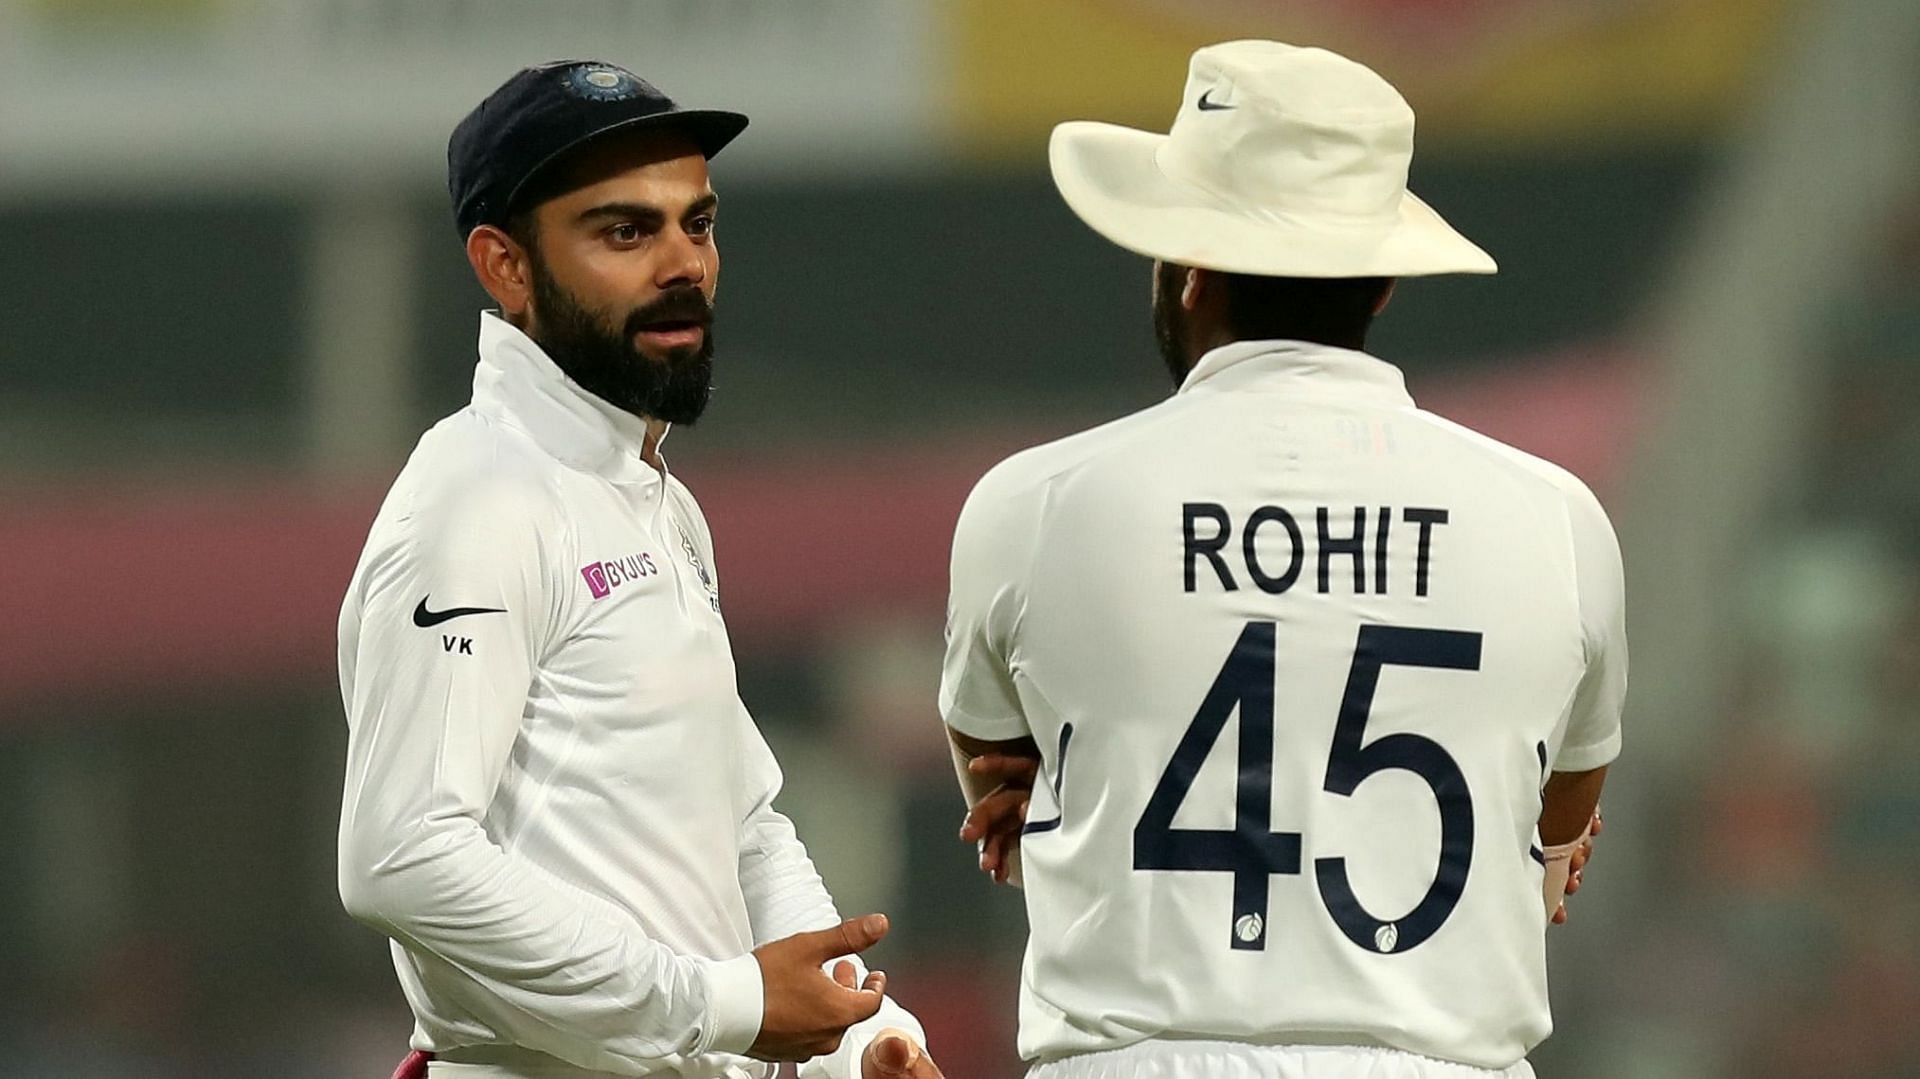 विराट कोहली के टेस्ट कप्तानी छोड़ने के बाद रोहित शर्मा सबसे आगे हैं 